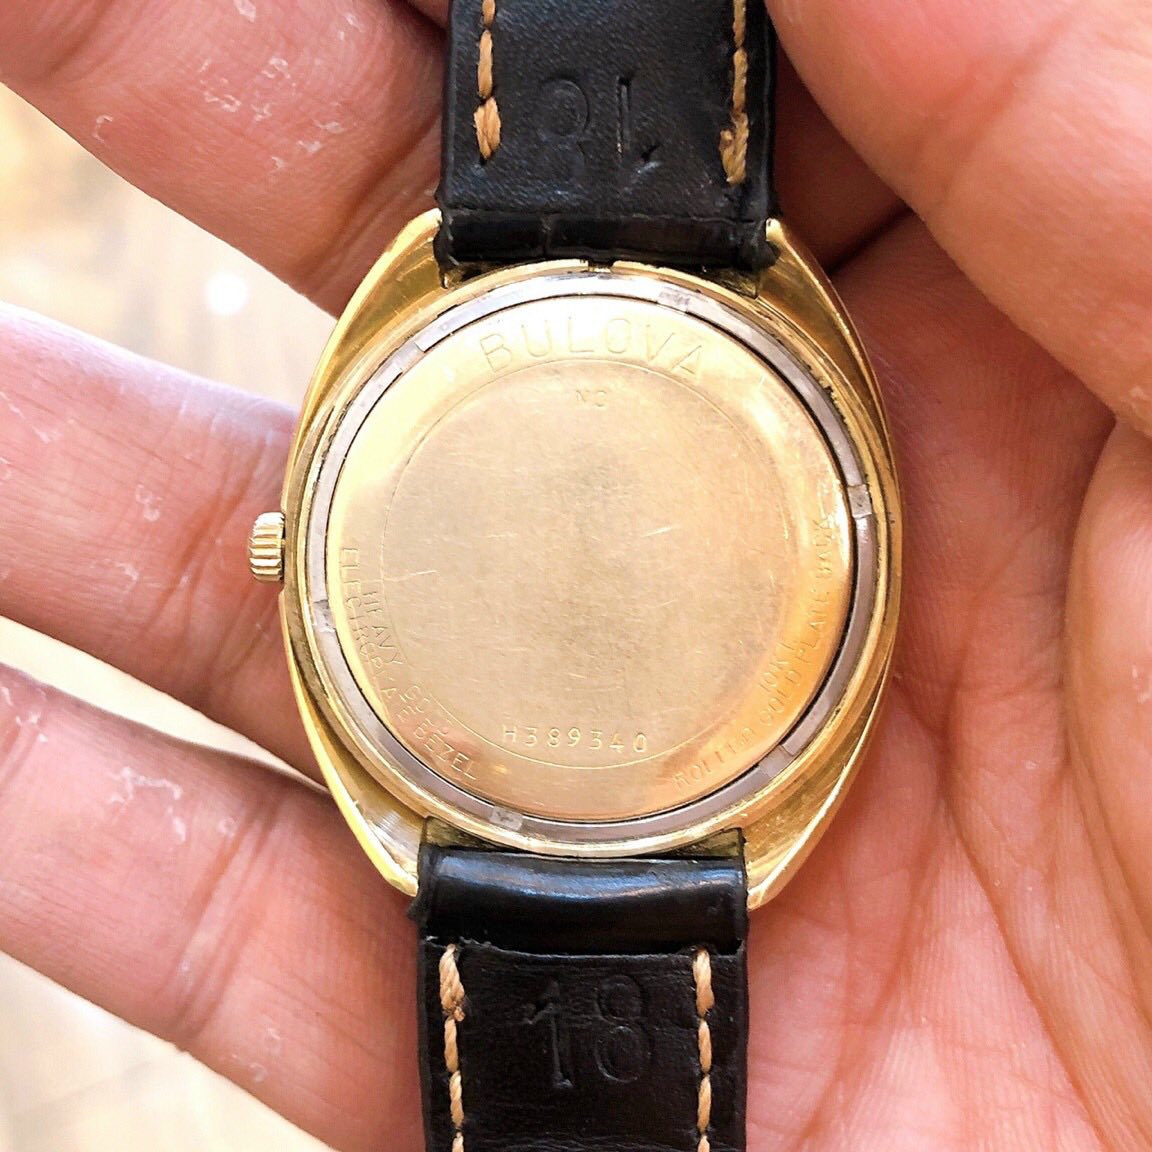 Đồng hồ cổ Bulova cá heo automatic vỏ bọc vàng 10k RGP